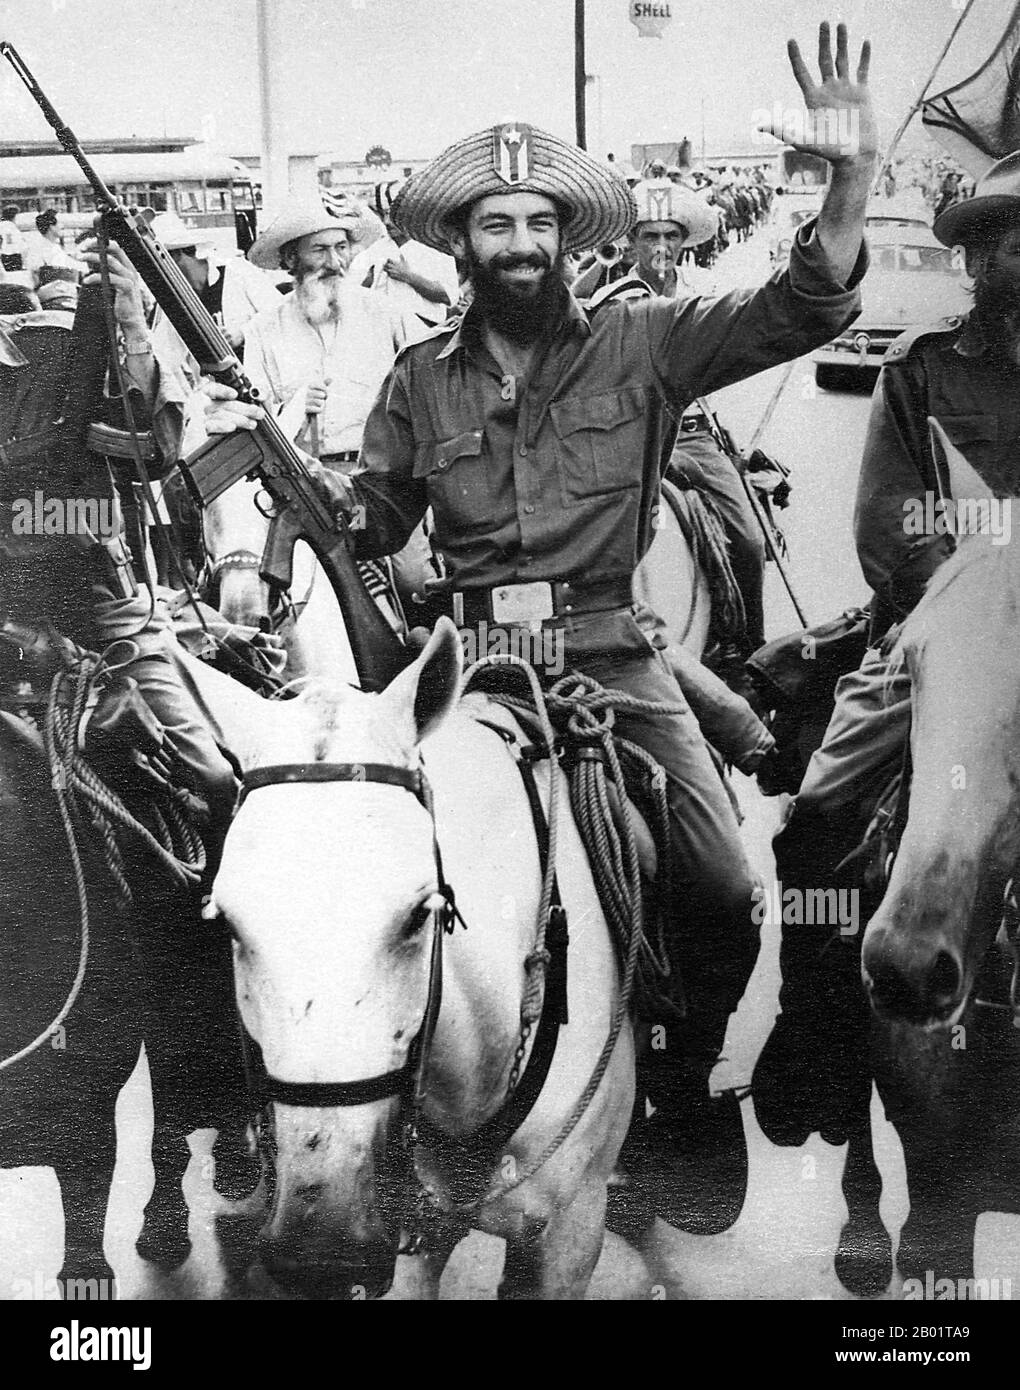 Cuba : Camilo Cienfuegos (6 février 1932 - 28 octobre 1959) après sa victoire à Yaguajay, c. janvier 1959. Camilo Cienfuegos Gorriarán était un révolutionnaire cubain né à Lawton, la Havane. Élevé dans une famille anarchiste qui avait quitté l'Espagne avant la guerre civile espagnole, il est devenu une figure clé de la révolution cubaine, avec Fidel Castro, Che Guevara, Juan Almeida Bosque et Raúl Castro ; il était considéré comme le deuxième de Fidel Castro parmi les dirigeants révolutionnaires. Alors qu'il revenait de Camagüey, son avion disparut au-dessus du détroit de Floride et il fut présumé mort. Banque D'Images